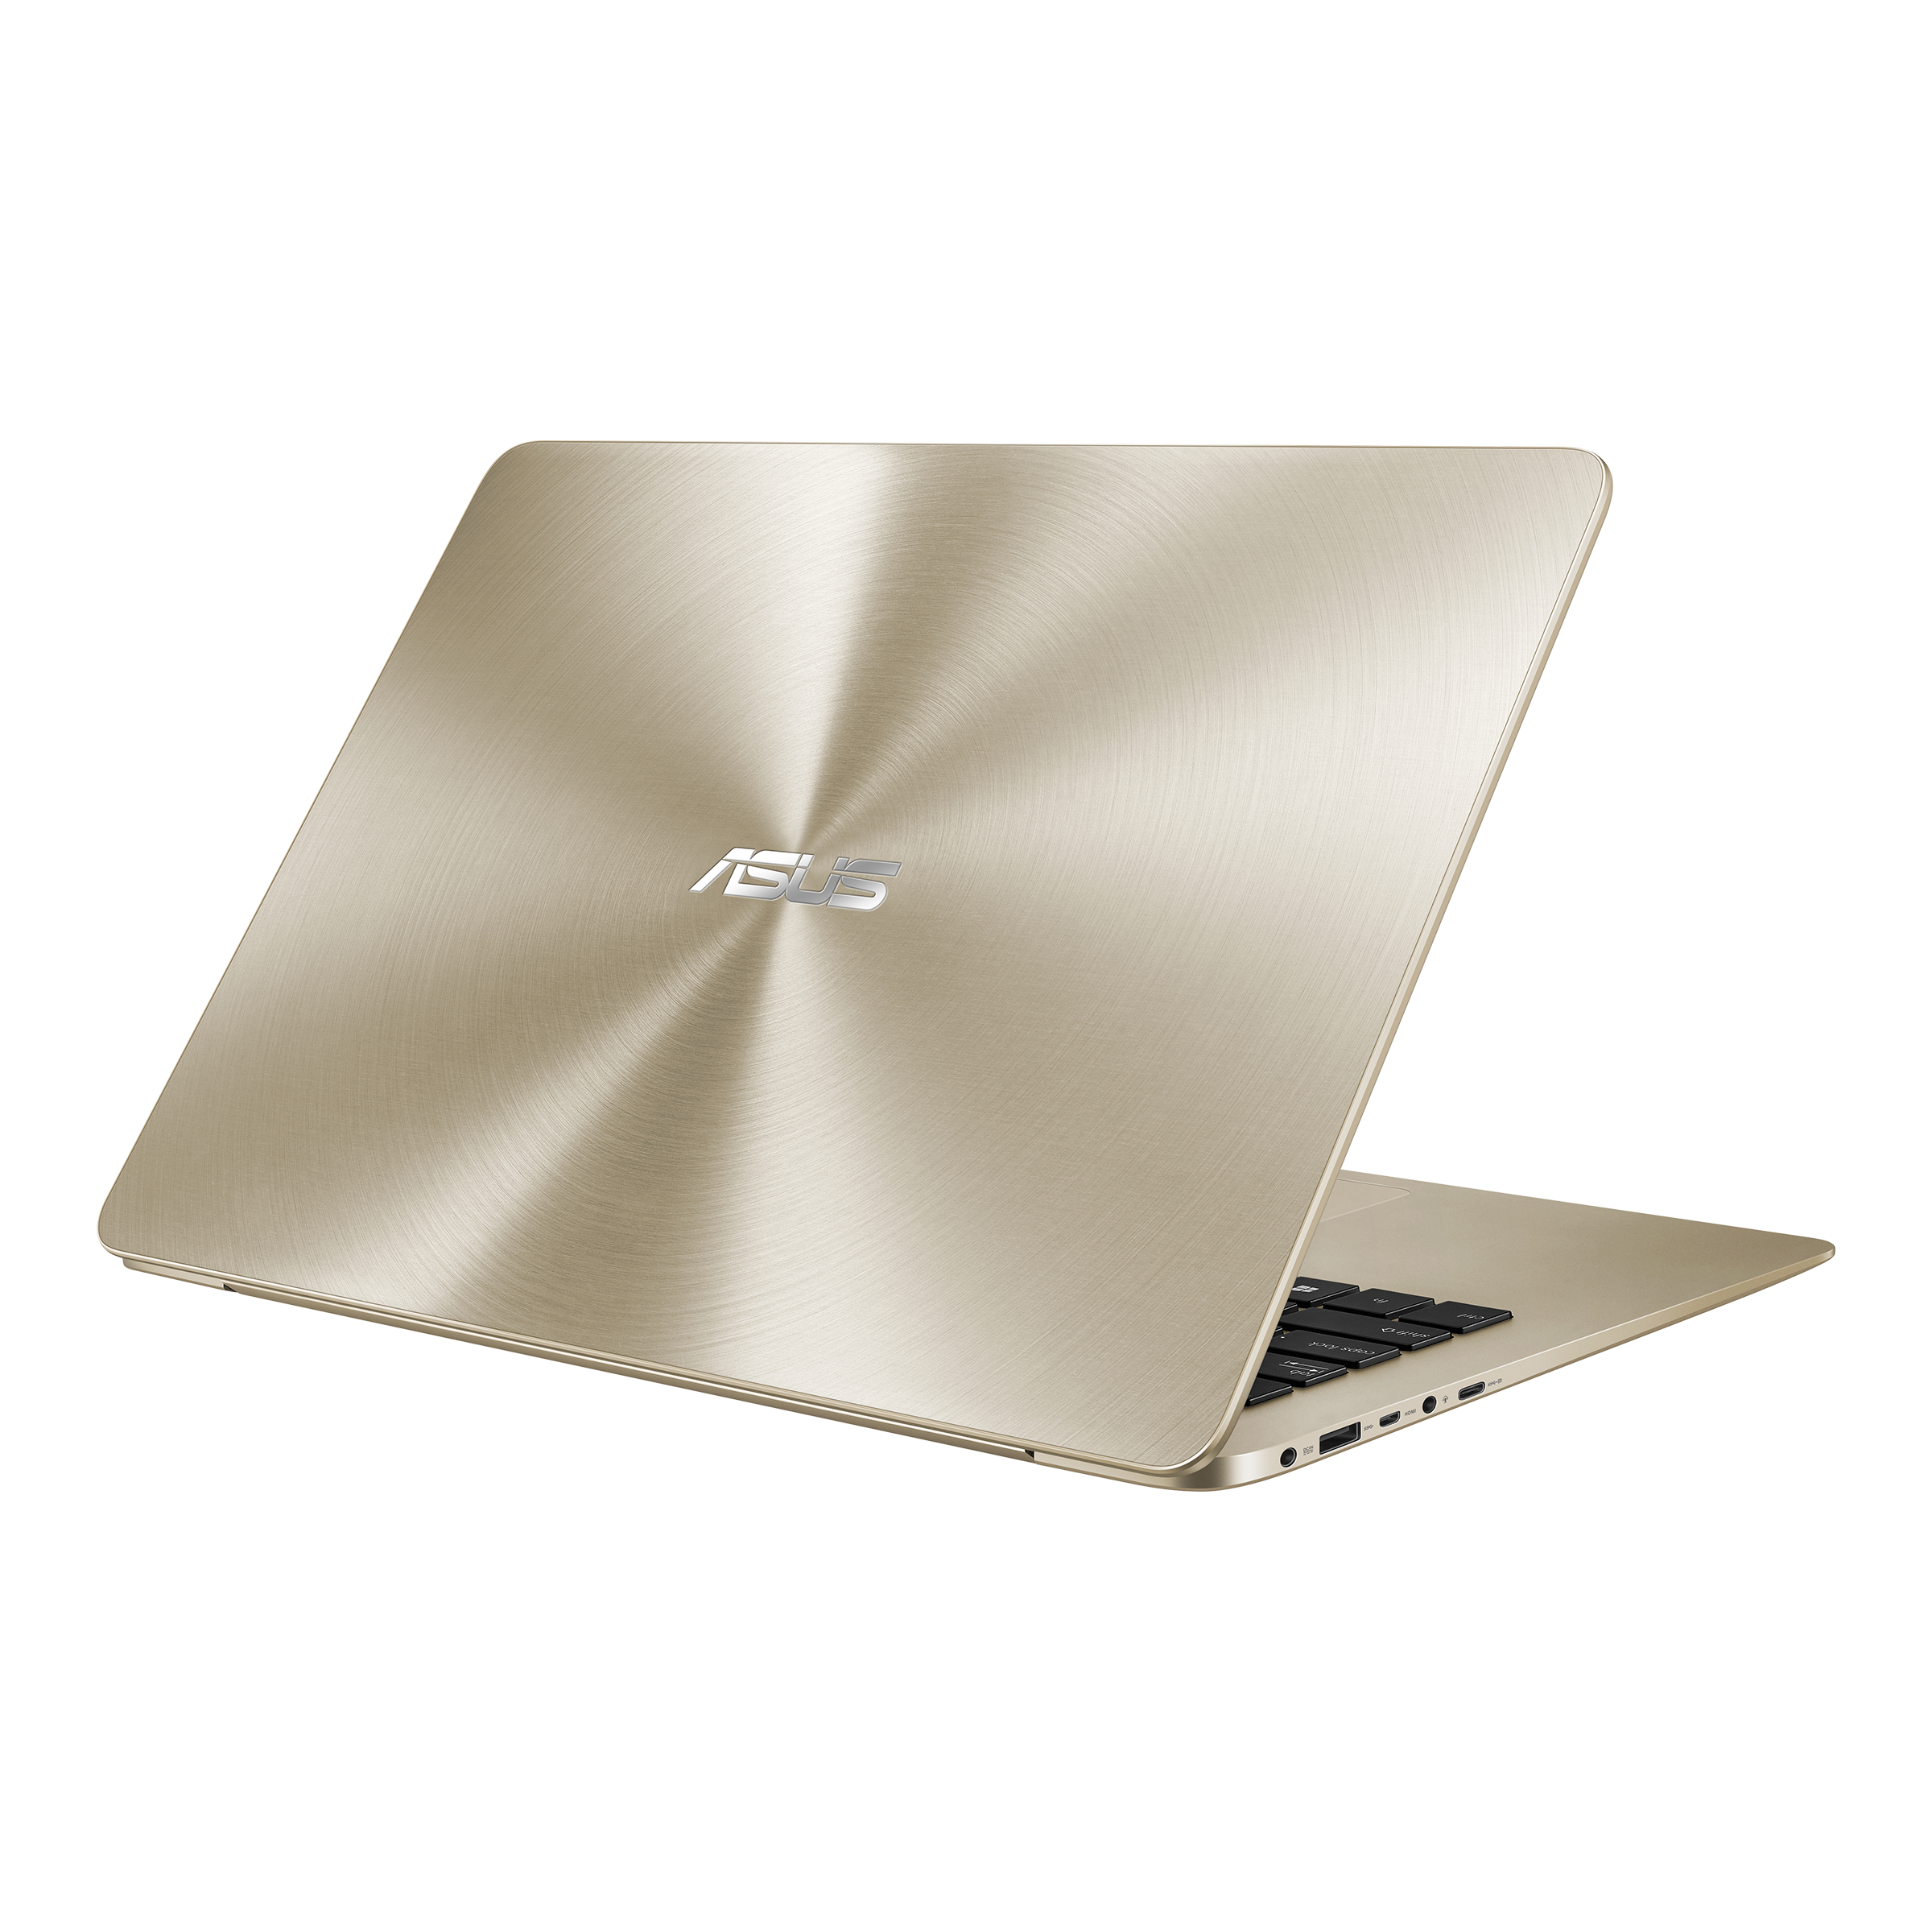 ASUS ZenBook 14 UX430UN i7/16GB/512GB